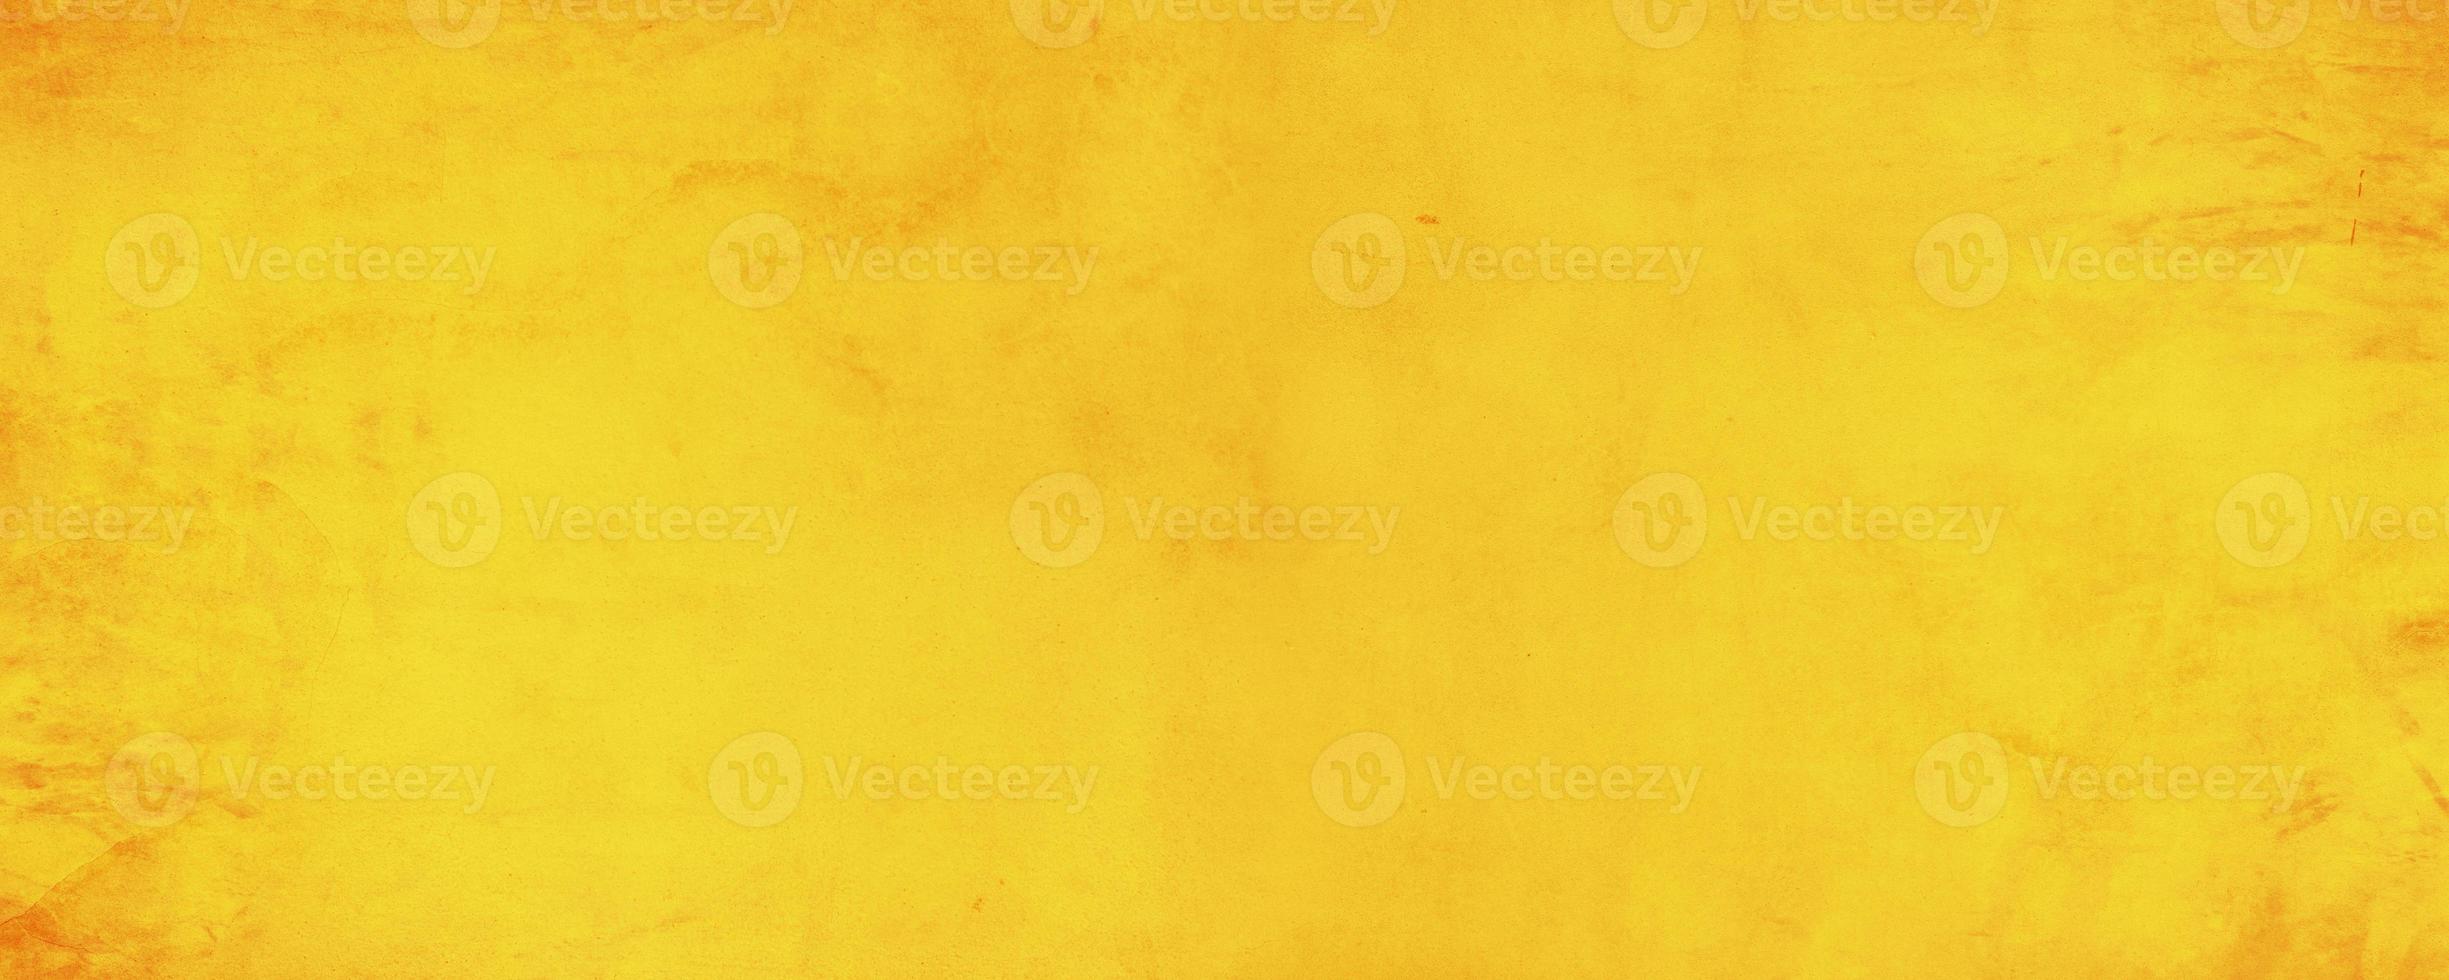 sfondo muro di cemento texture orizzontale giallo e arancione foto